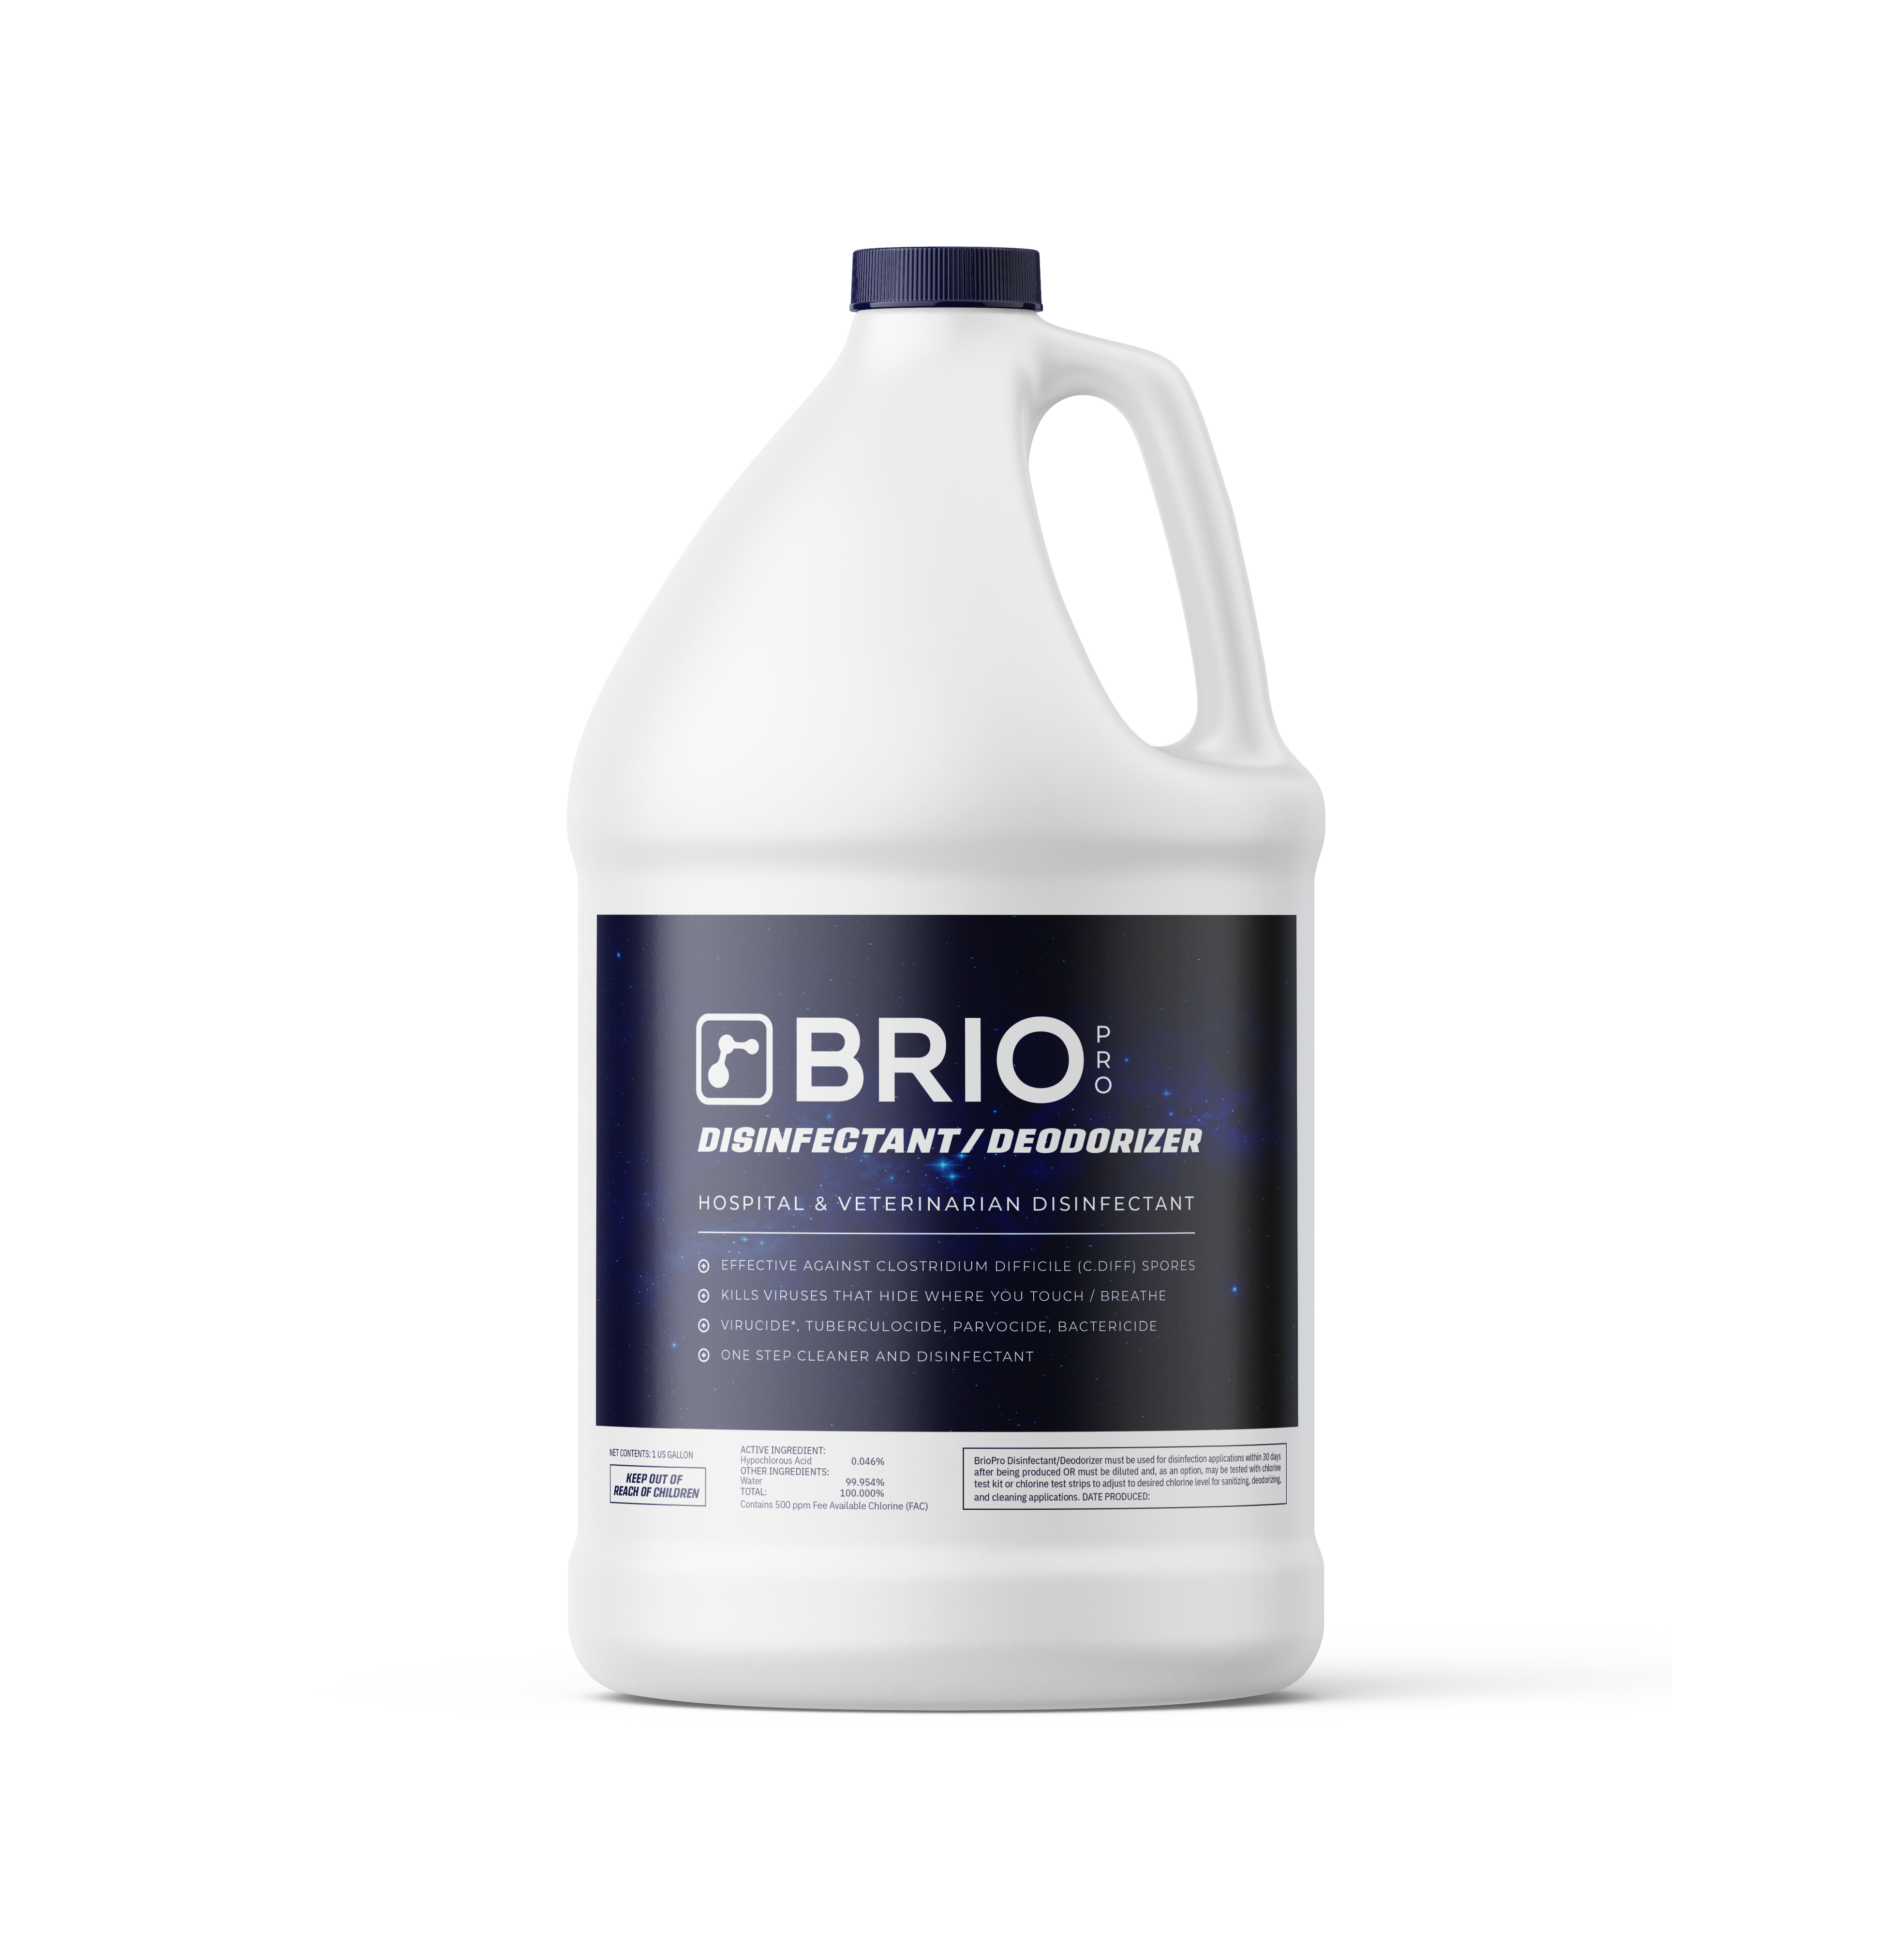 BrioPro Disinfectant / Deodorizer (Hospital Level)